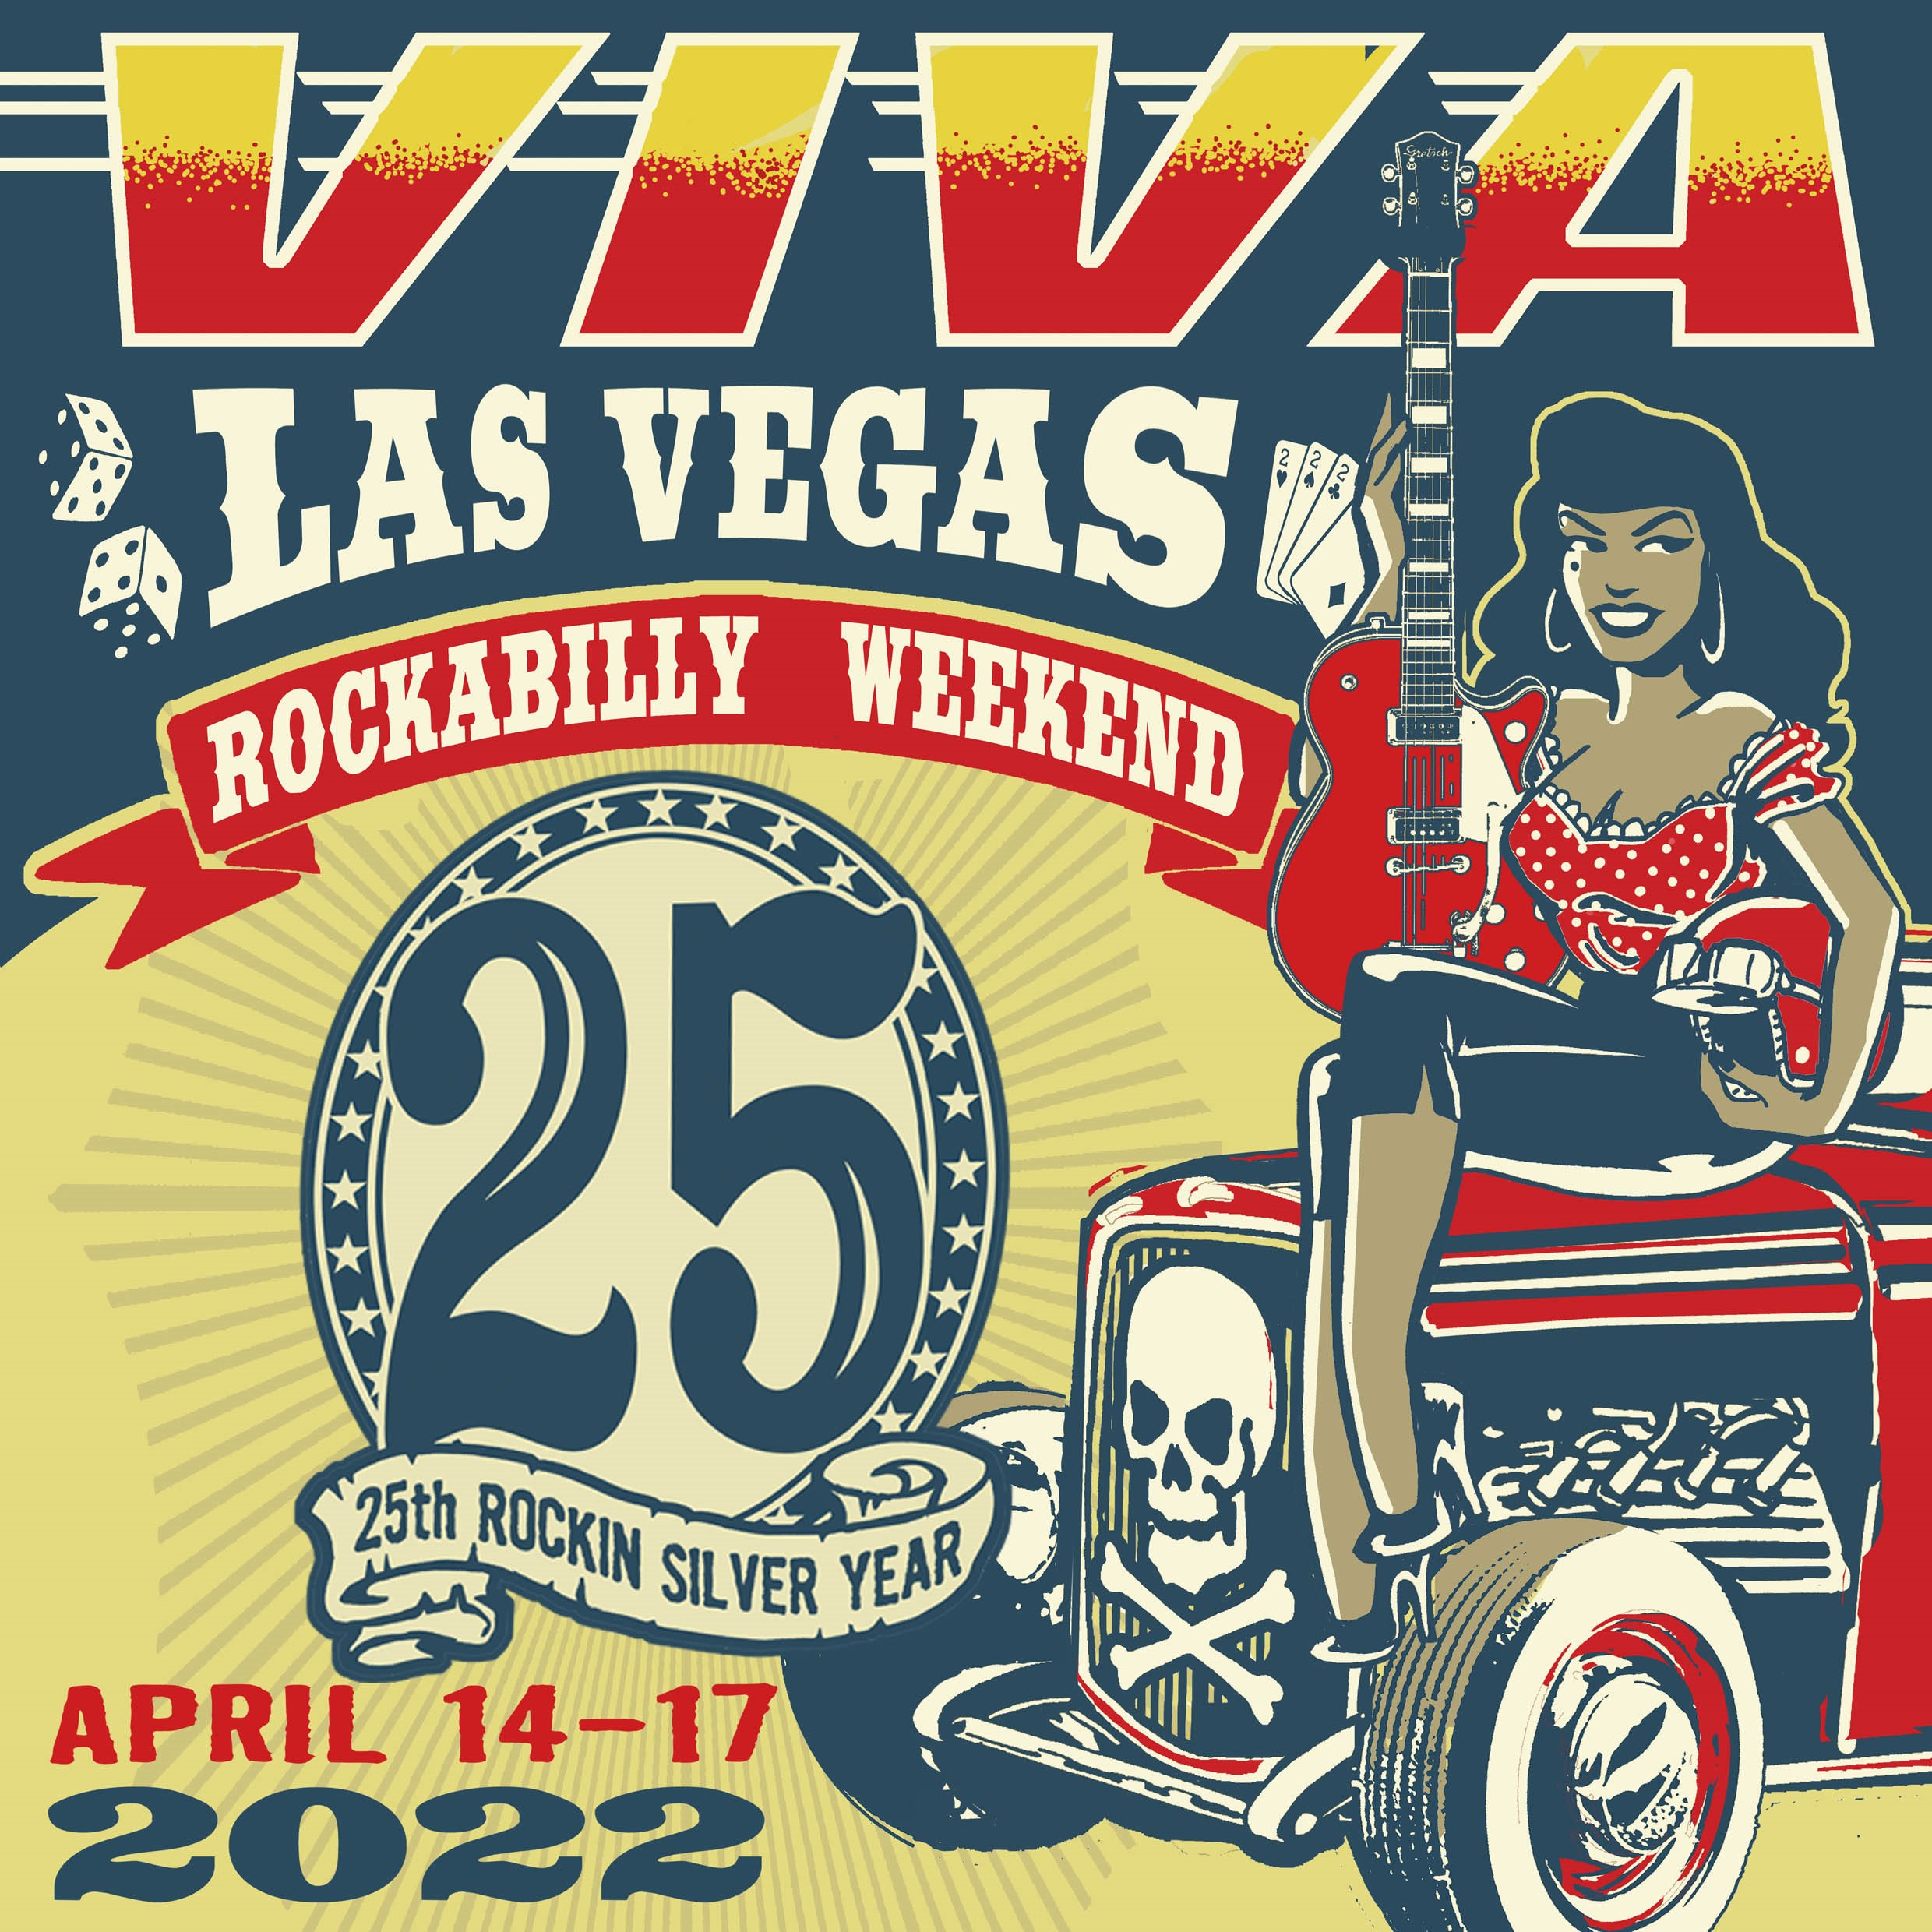 Viva Las Vegas Rockabilly Weekender 25